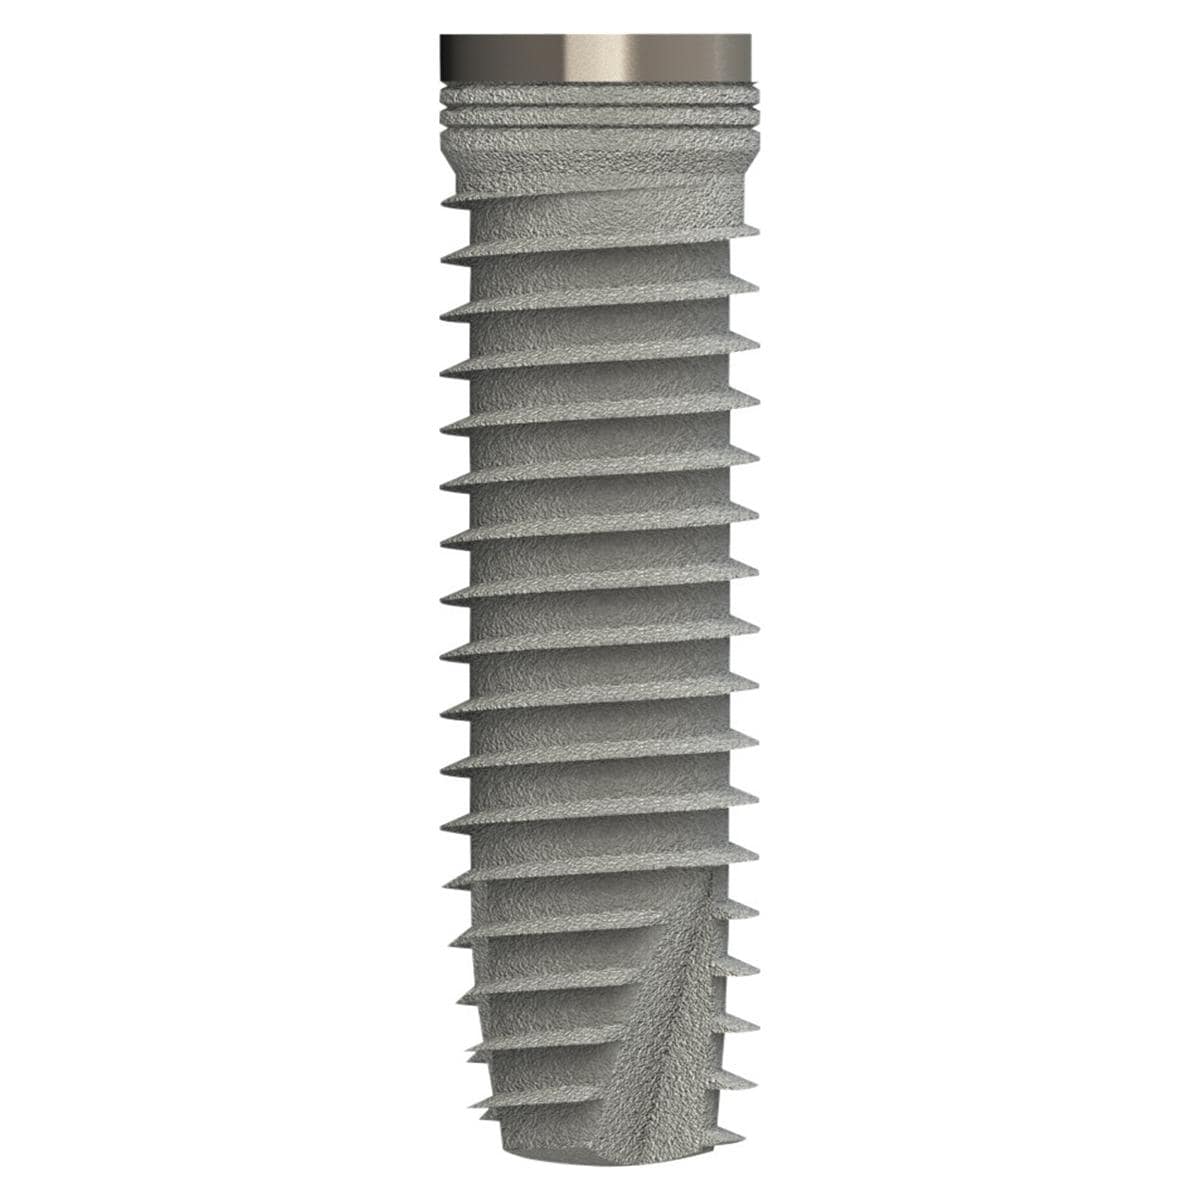 TL Implantat BONITex® P Ø 4,3 mm - Länge 16 mm